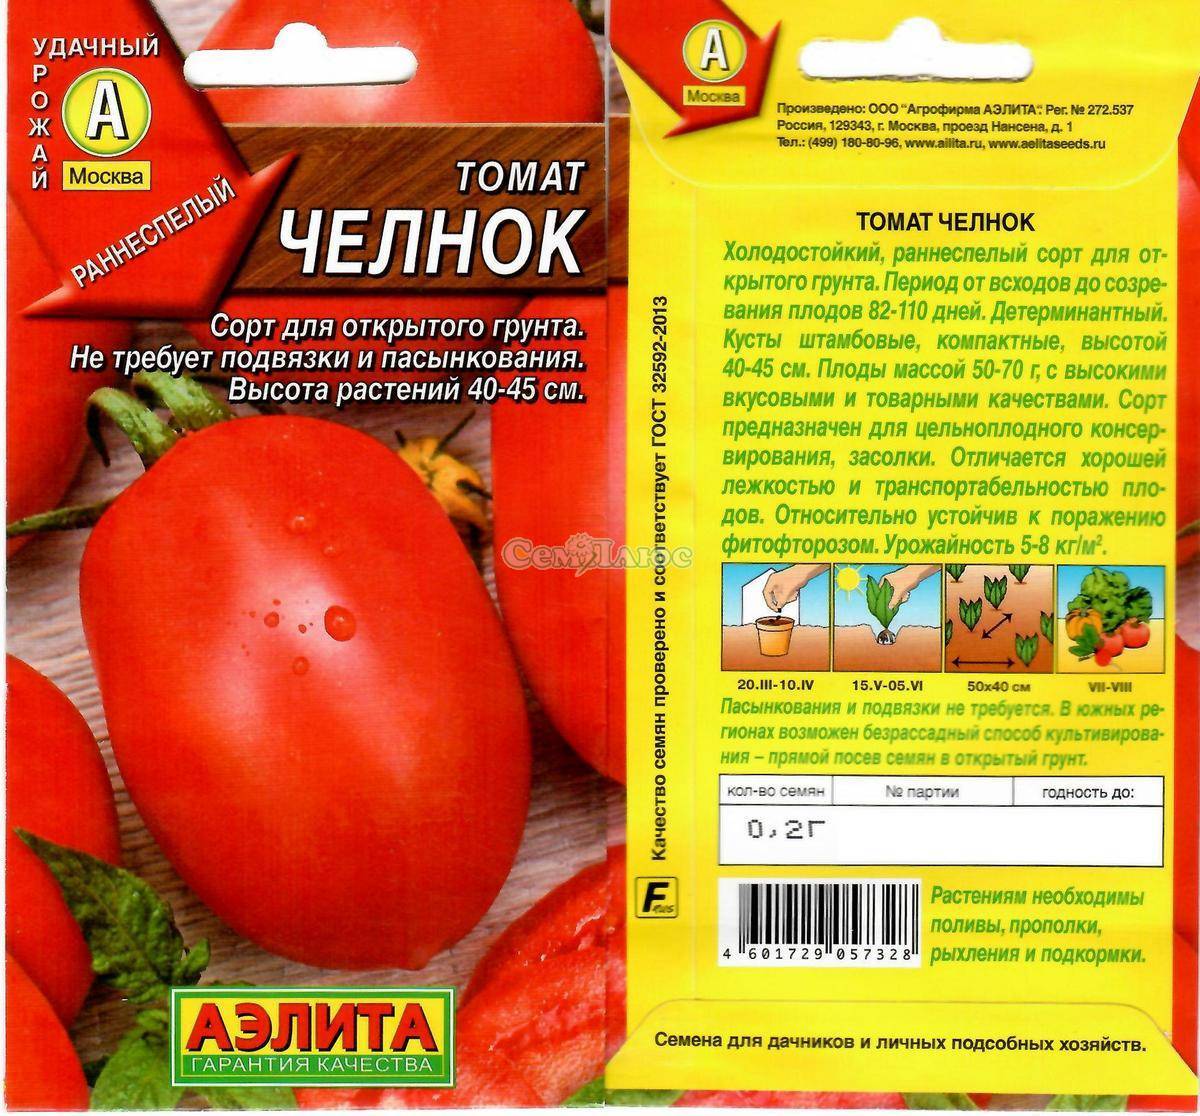 Описание сорта томата челнок и его характеристика: особенности выращивания из семян и фото созревших помидоров